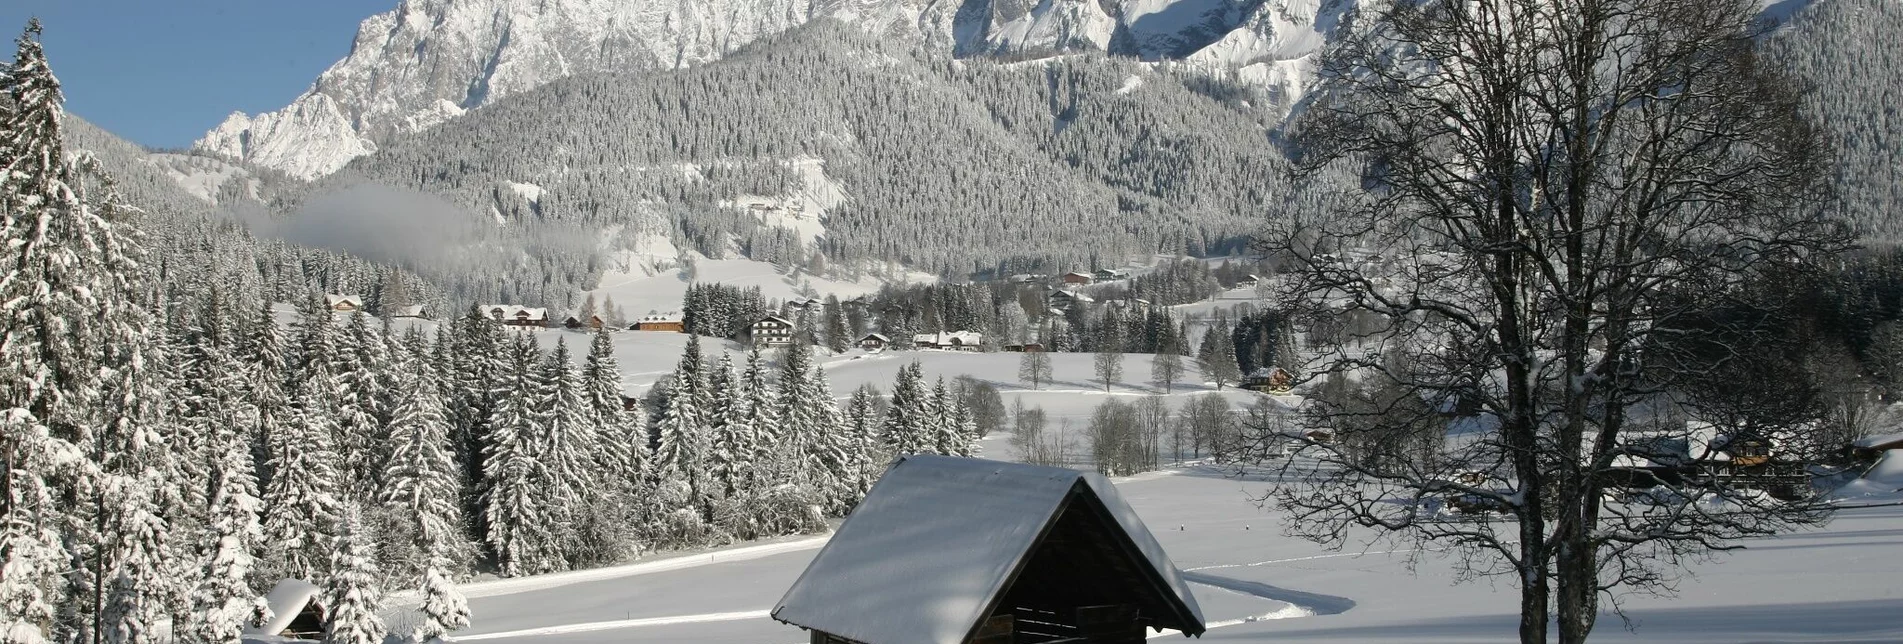 Winterwandern Kulmbergrunde - Touren-Impression #1 | © Erlebnisregion Schladming-Dachstein